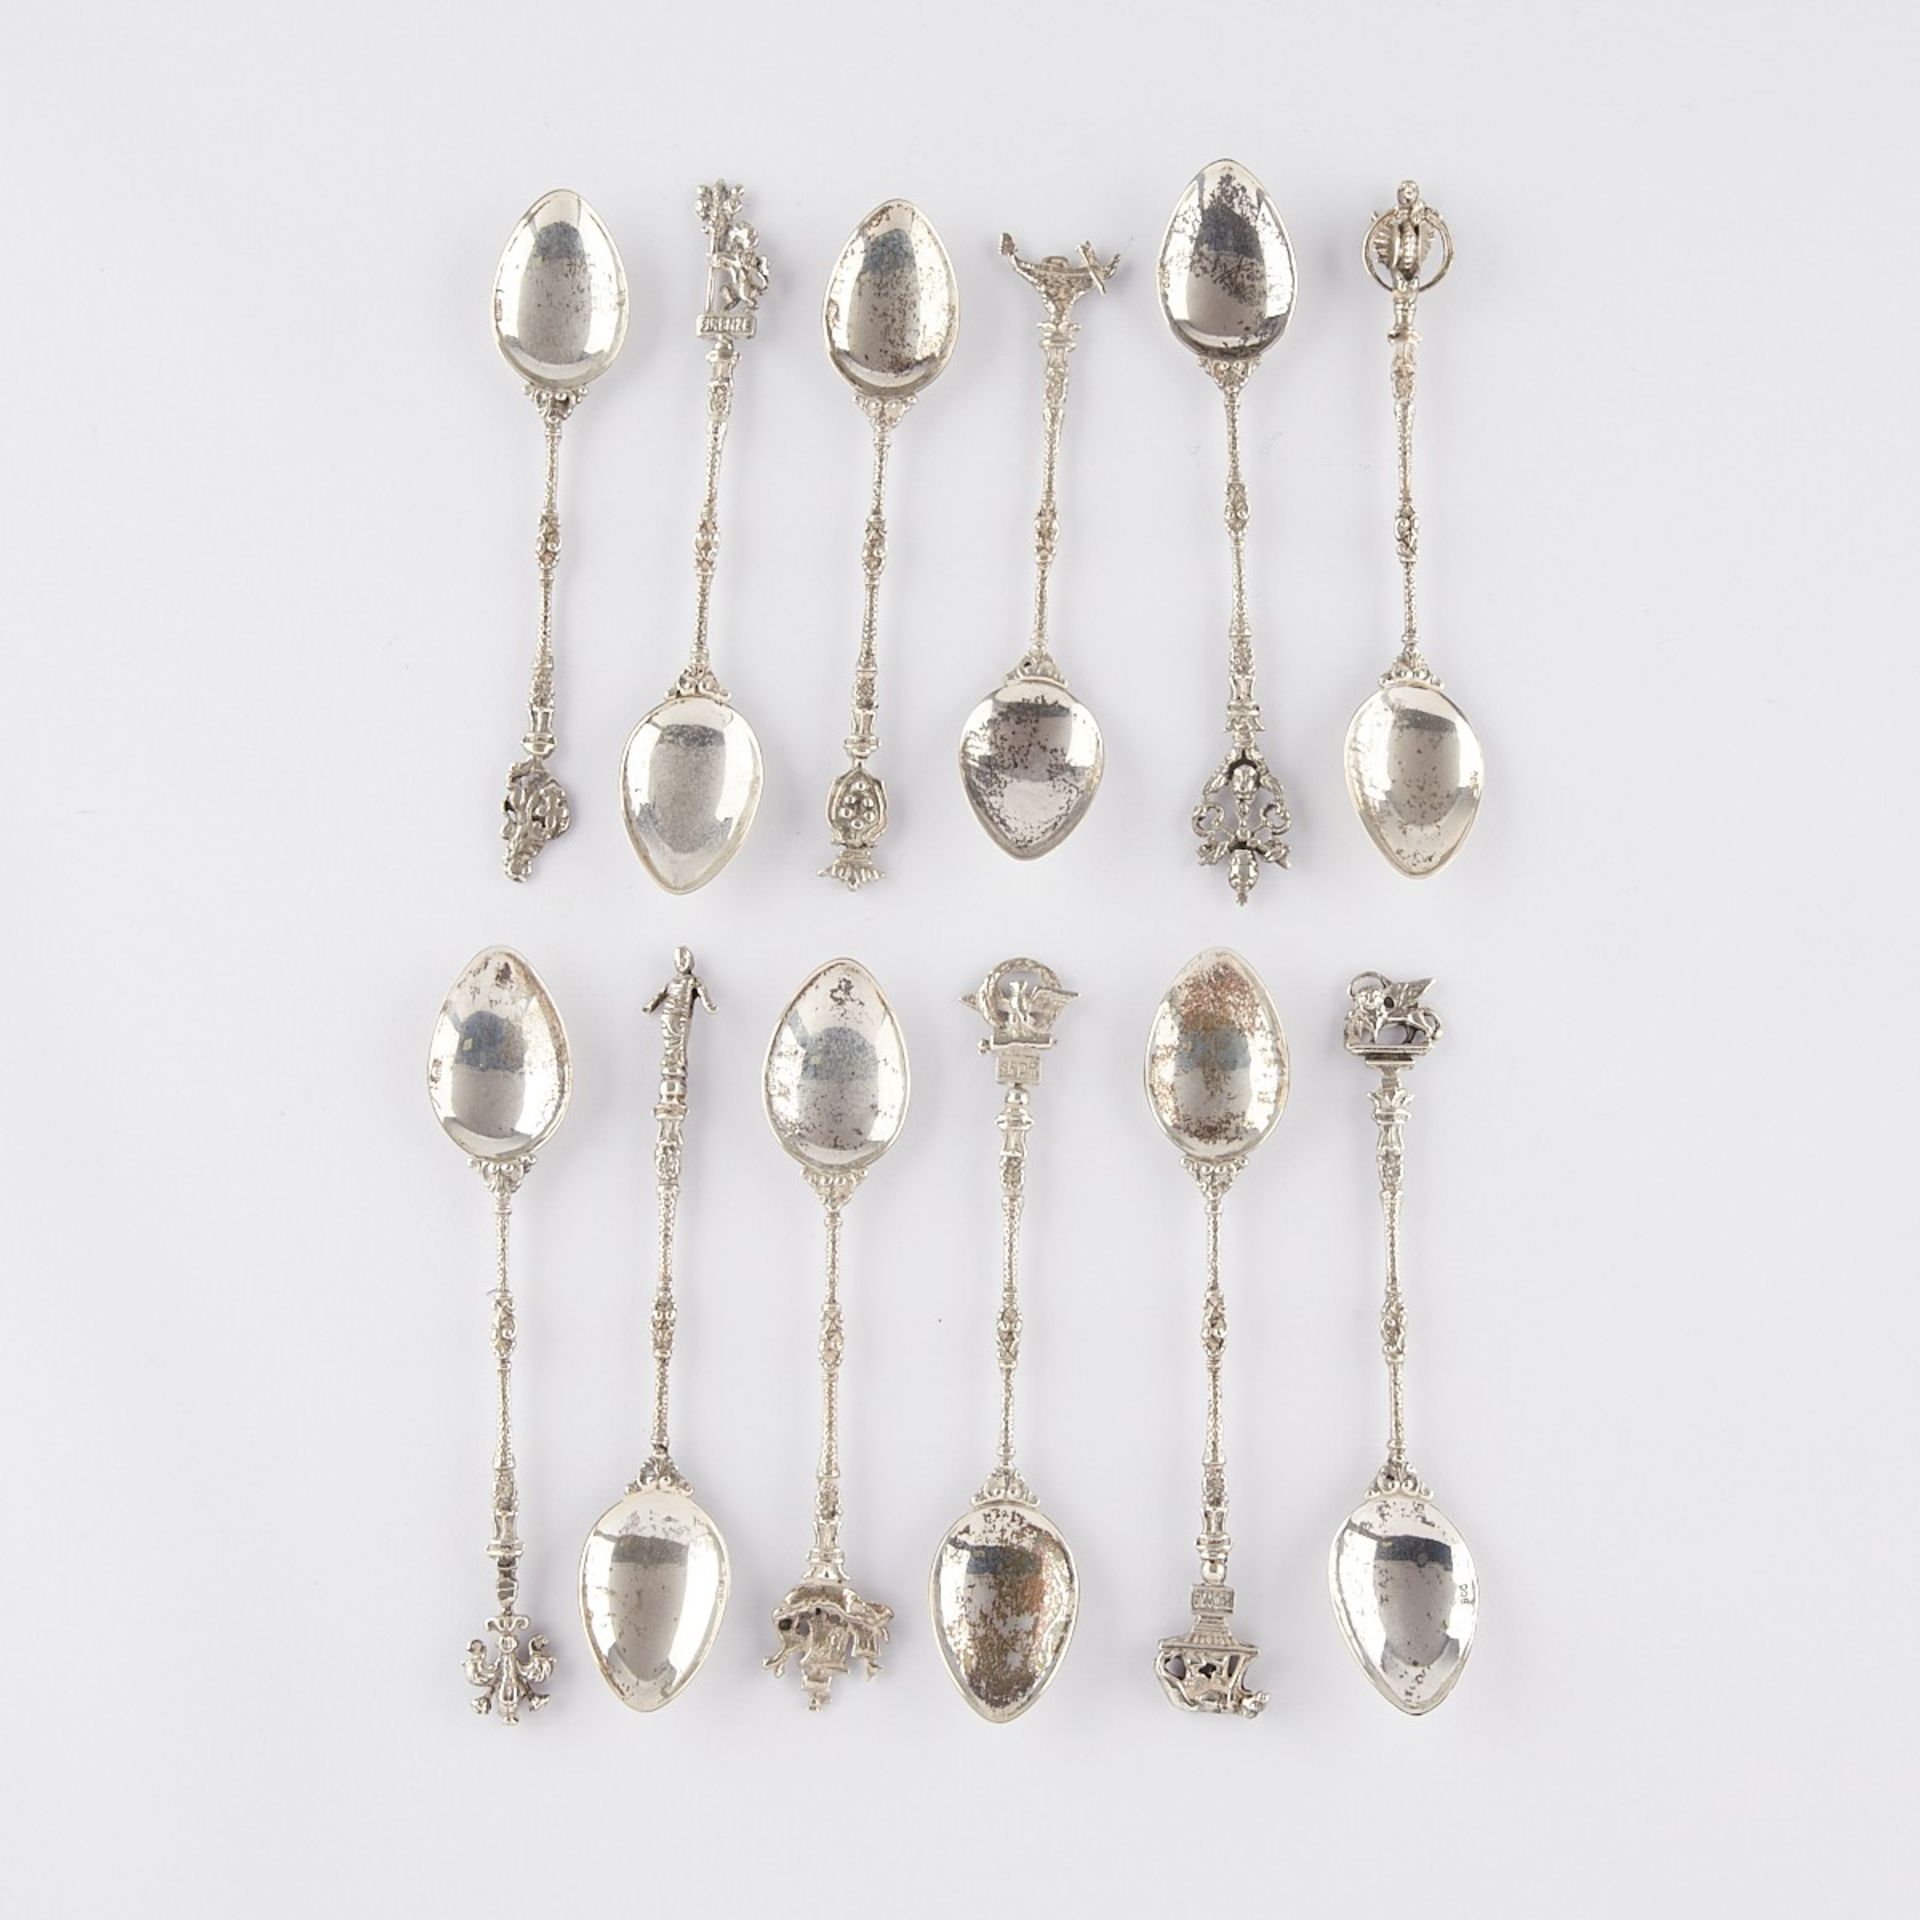 Group of 12 Italian 800 Silver Souvenir Spoons